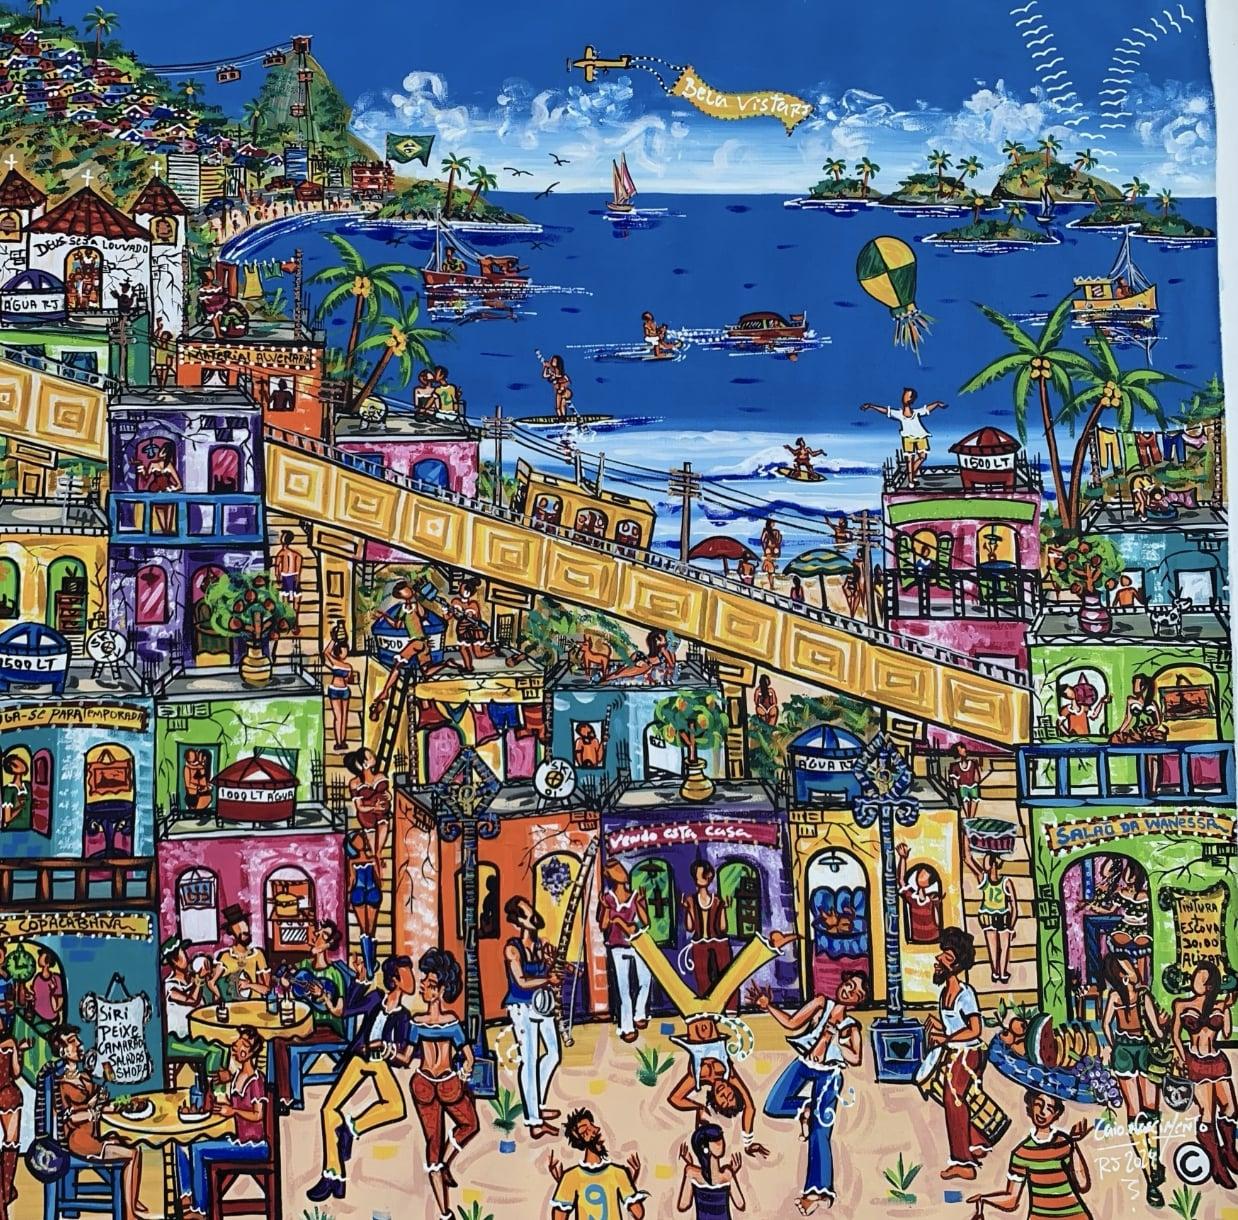 "Copoeira in Favela, with a View of Copacabana" dépeint la riche tapisserie de la culture brésilienne à travers le prisme de la vie urbaine. Au premier plan, des personnes s'adonnent à la danse traditionnelle afro-brésilienne de la capoeira, leurs